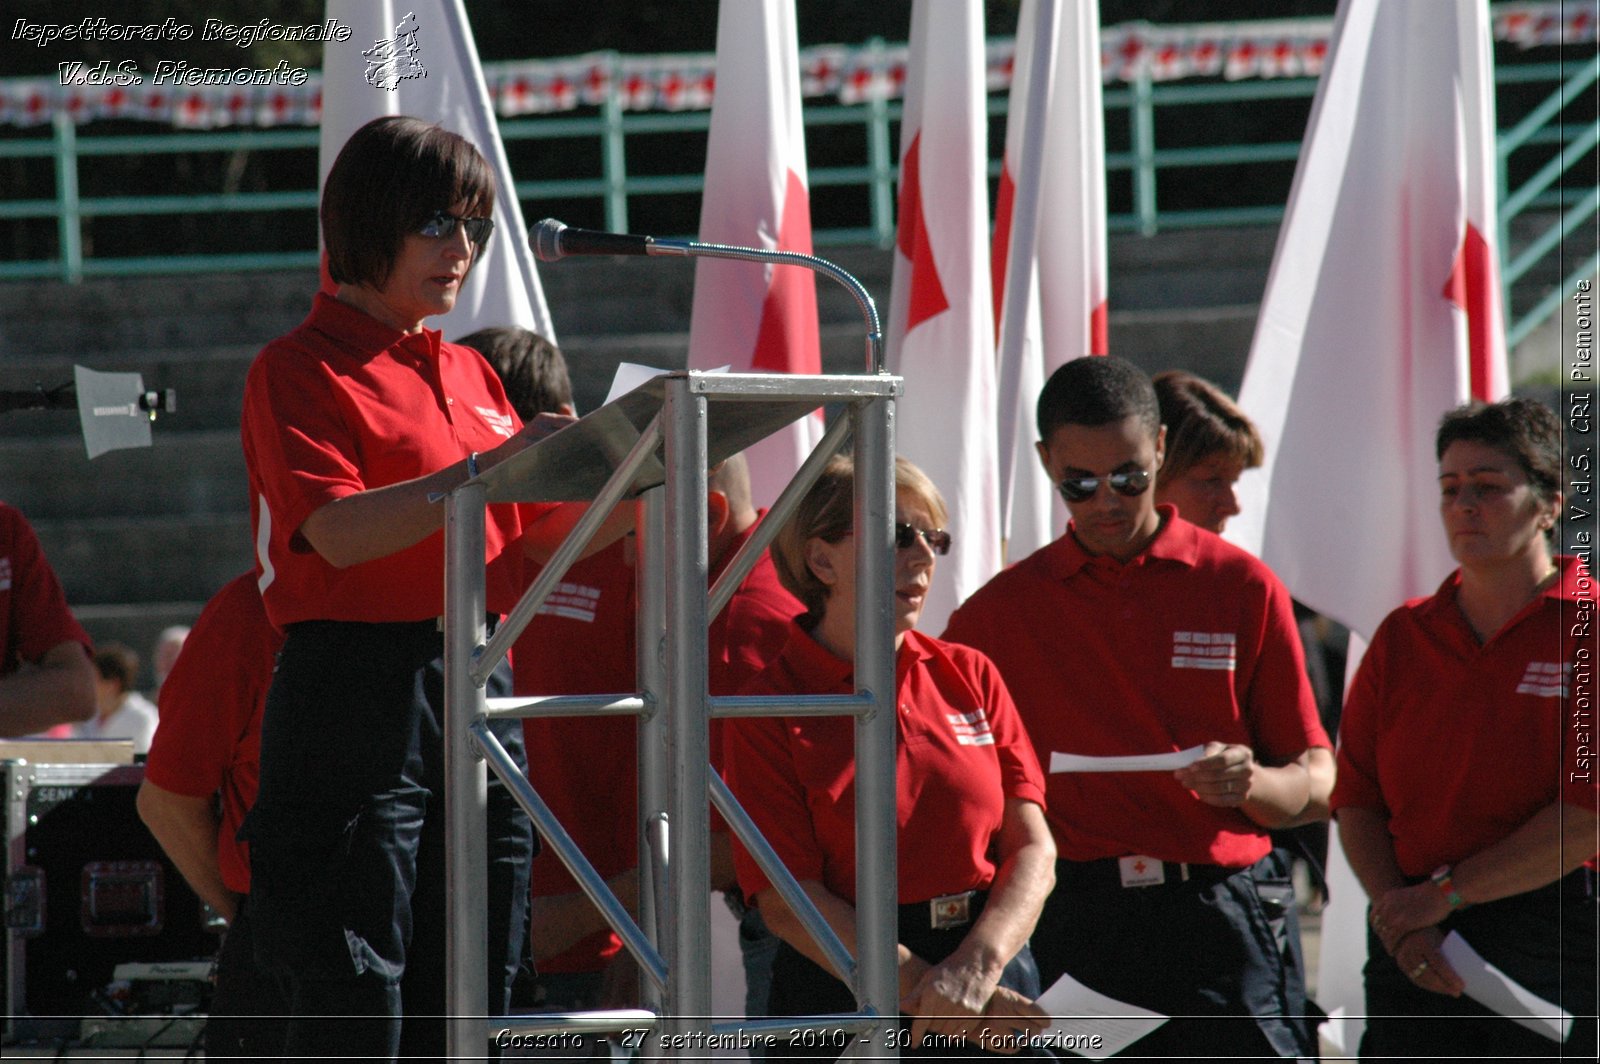 Cossato - 27 settembre 2010 - 30 anni fondazione -  Croce Rossa Italiana - Ispettorato Regionale Volontari del Soccorso Piemonte